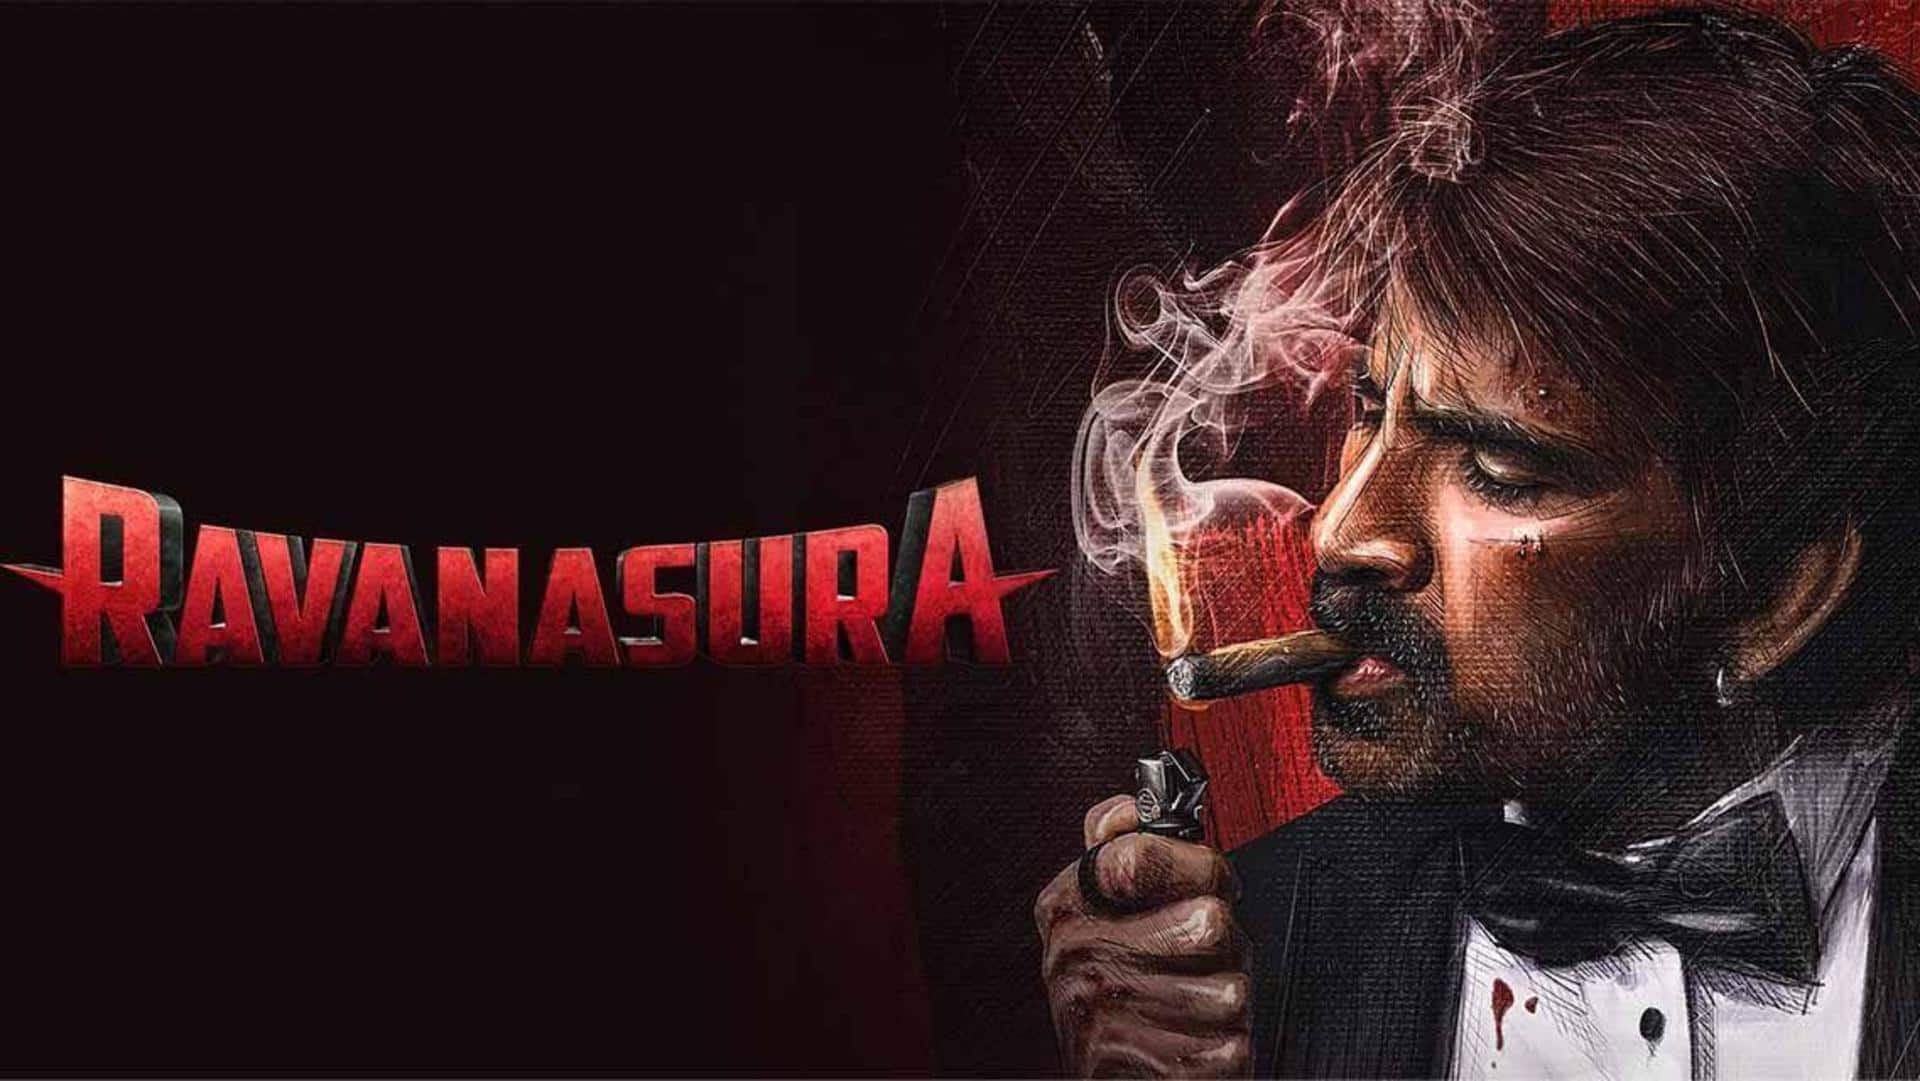 Ravi Teja's psychological thriller 'Ravanasura' is now streaming on OTT